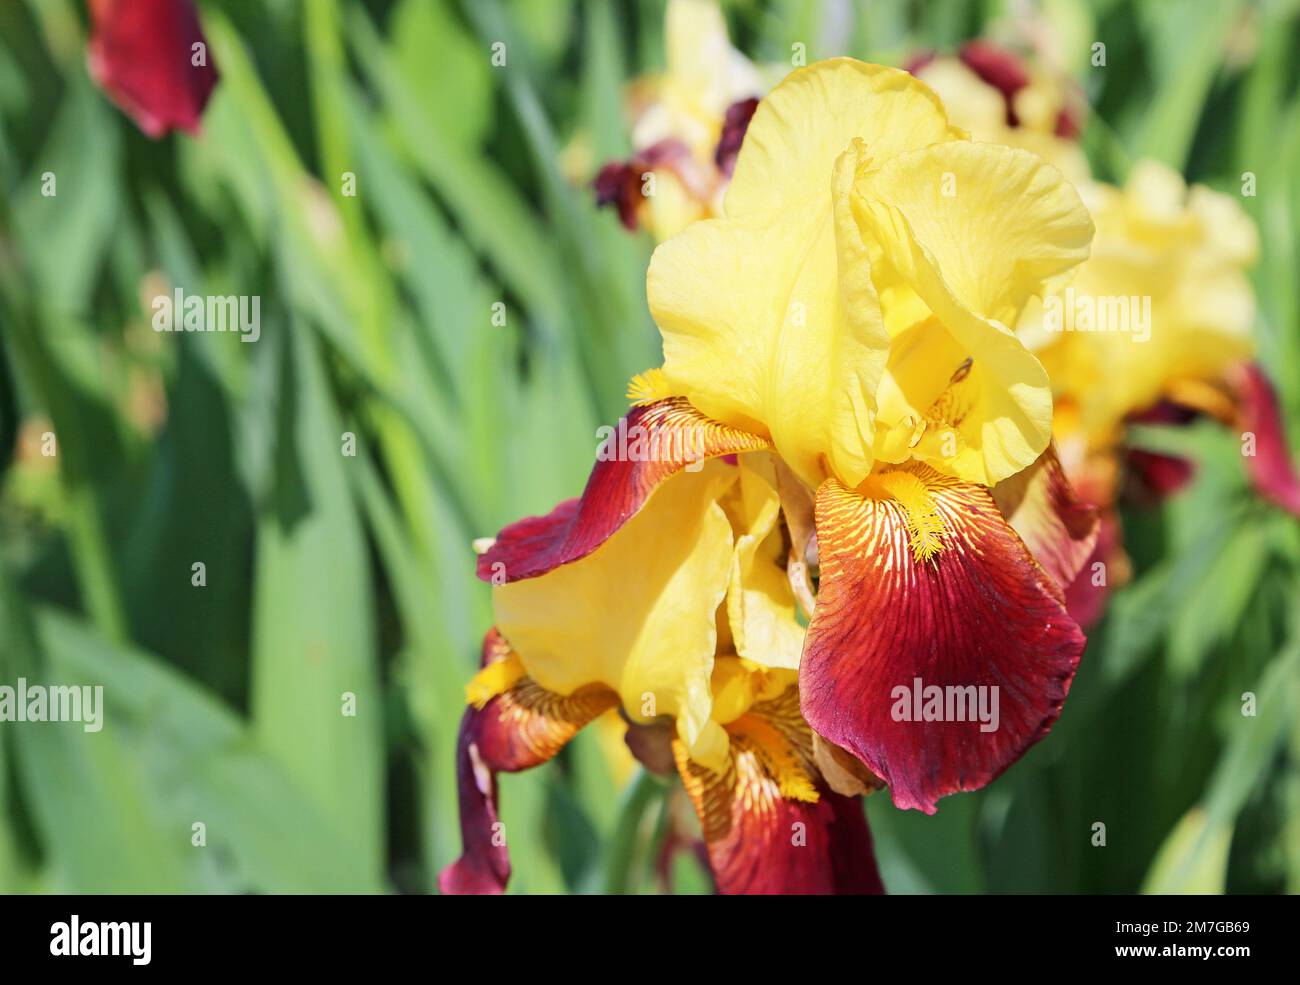 Yellow red Iris flower Stock Photo